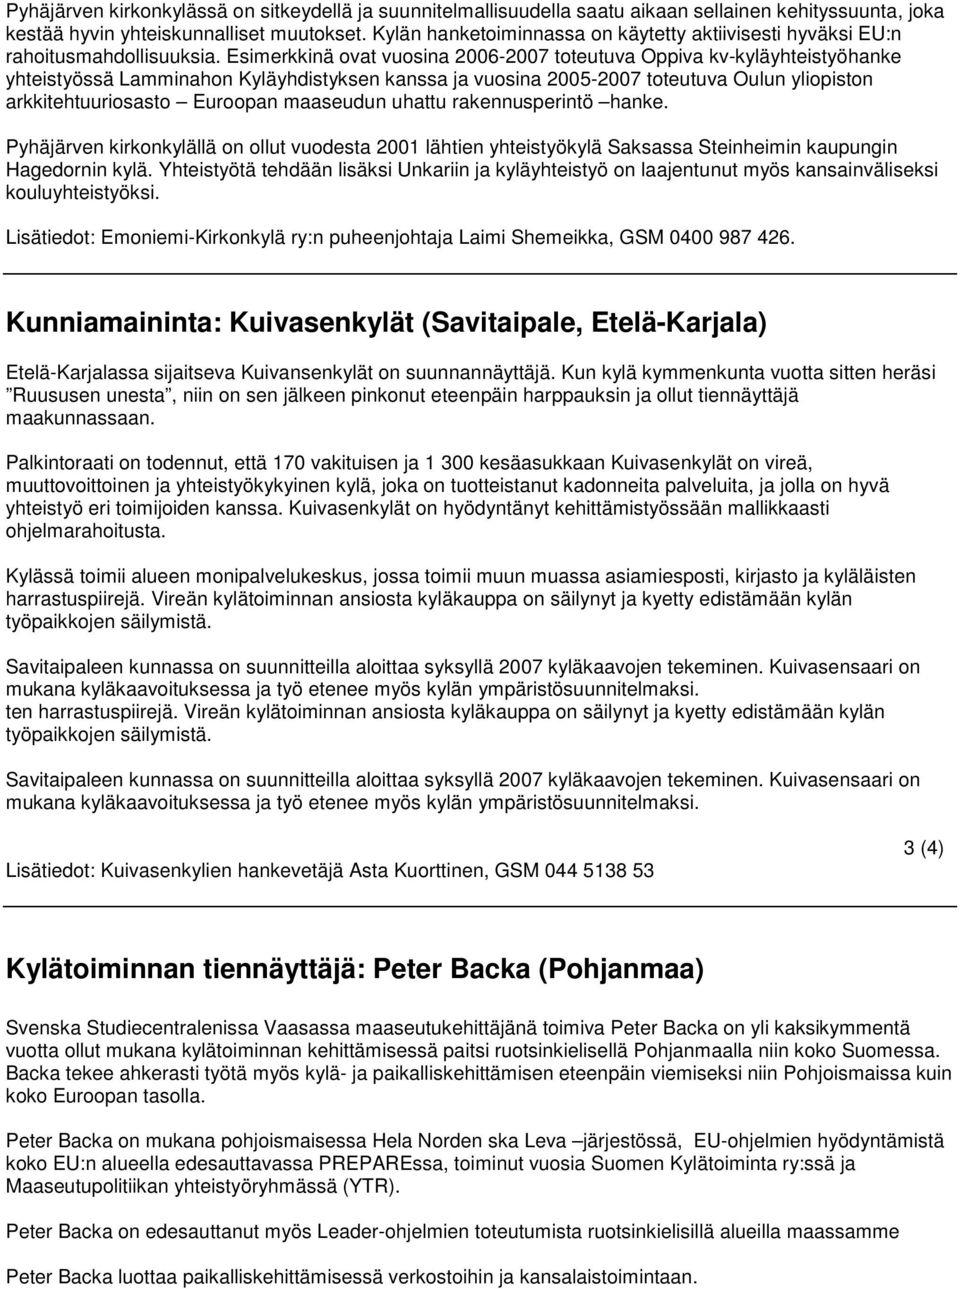 Esimerkkinä ovat vuosina 2006-2007 toteutuva Oppiva kv-kyläyhteistyöhanke yhteistyössä Lamminahon Kyläyhdistyksen kanssa ja vuosina 2005-2007 toteutuva Oulun yliopiston arkkitehtuuriosasto Euroopan